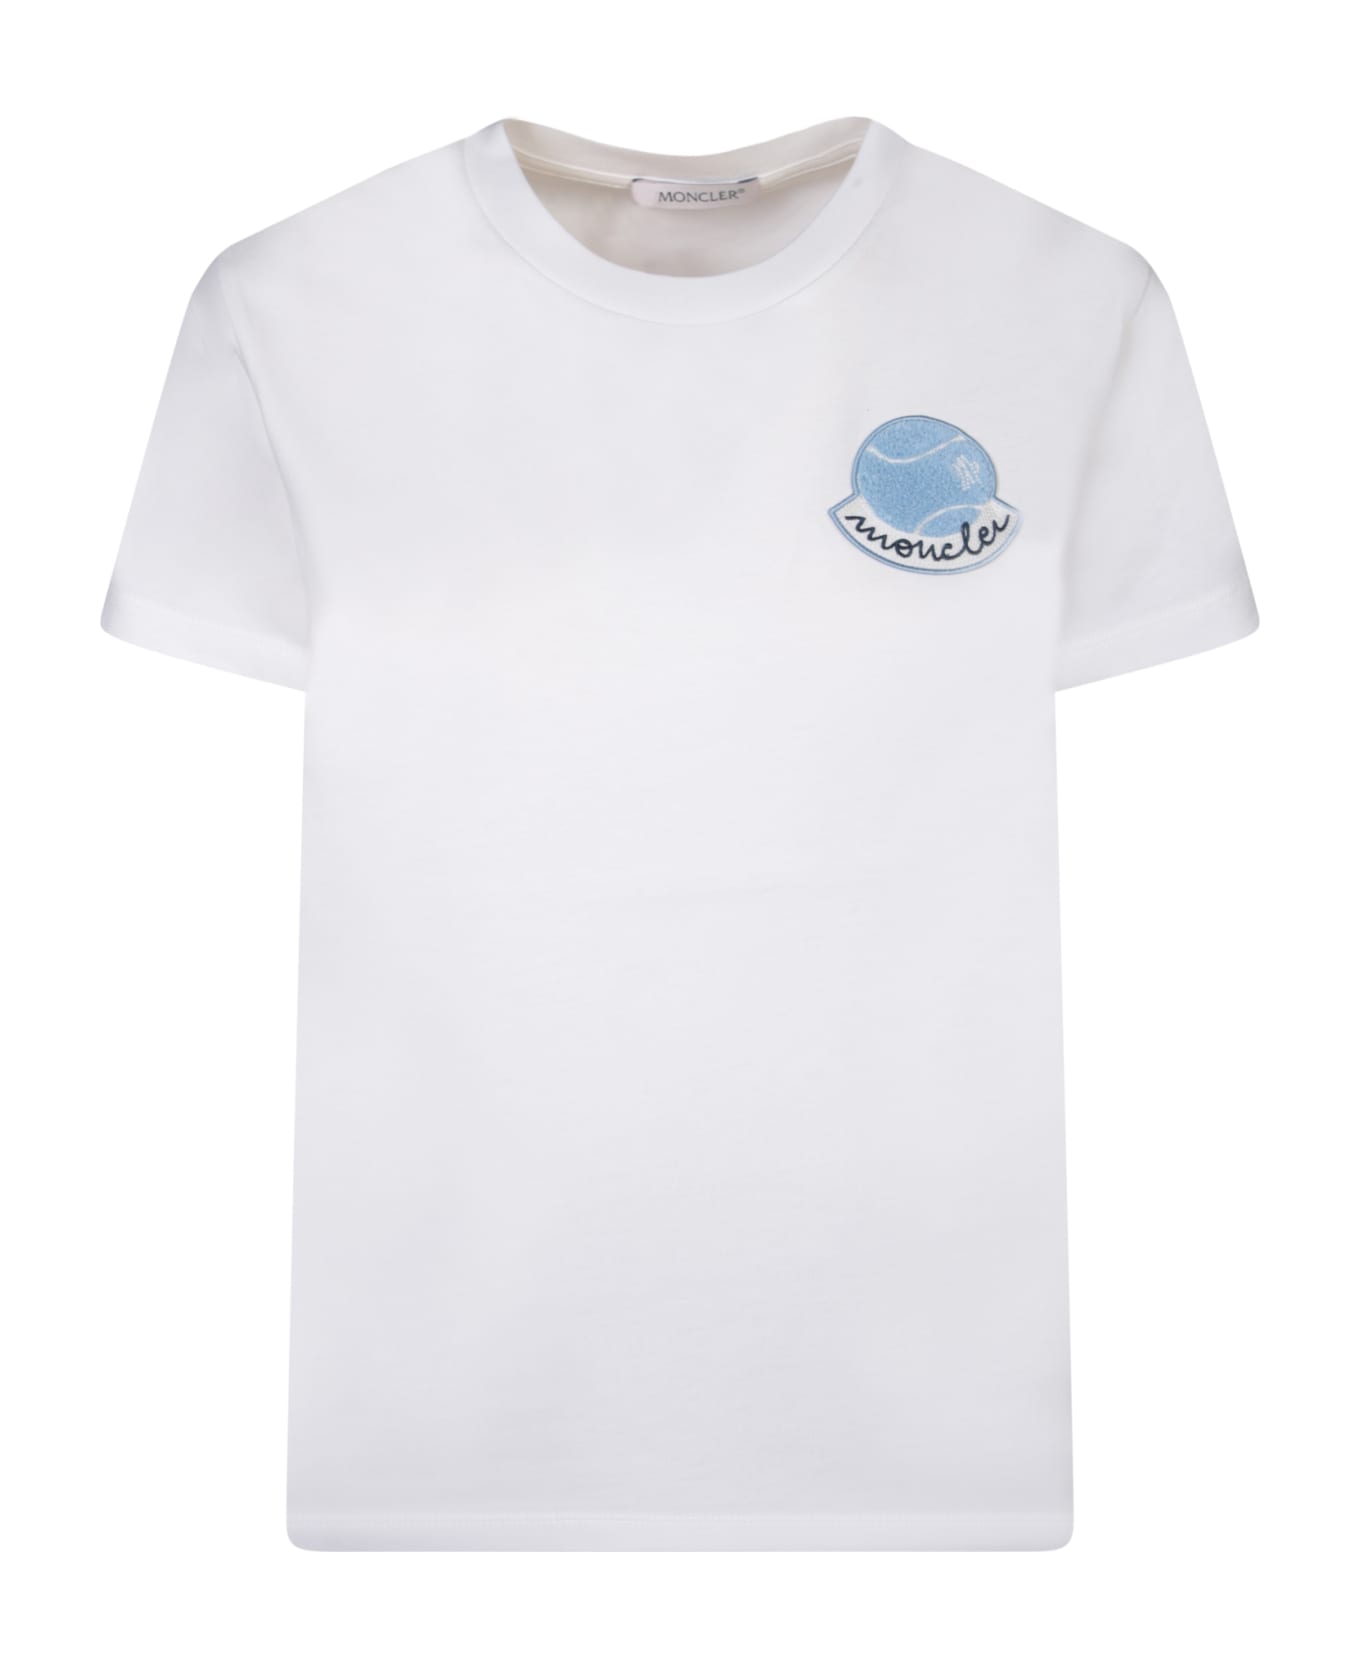 Moncler Regular T-shirt W/printed Detail - White Tシャツ